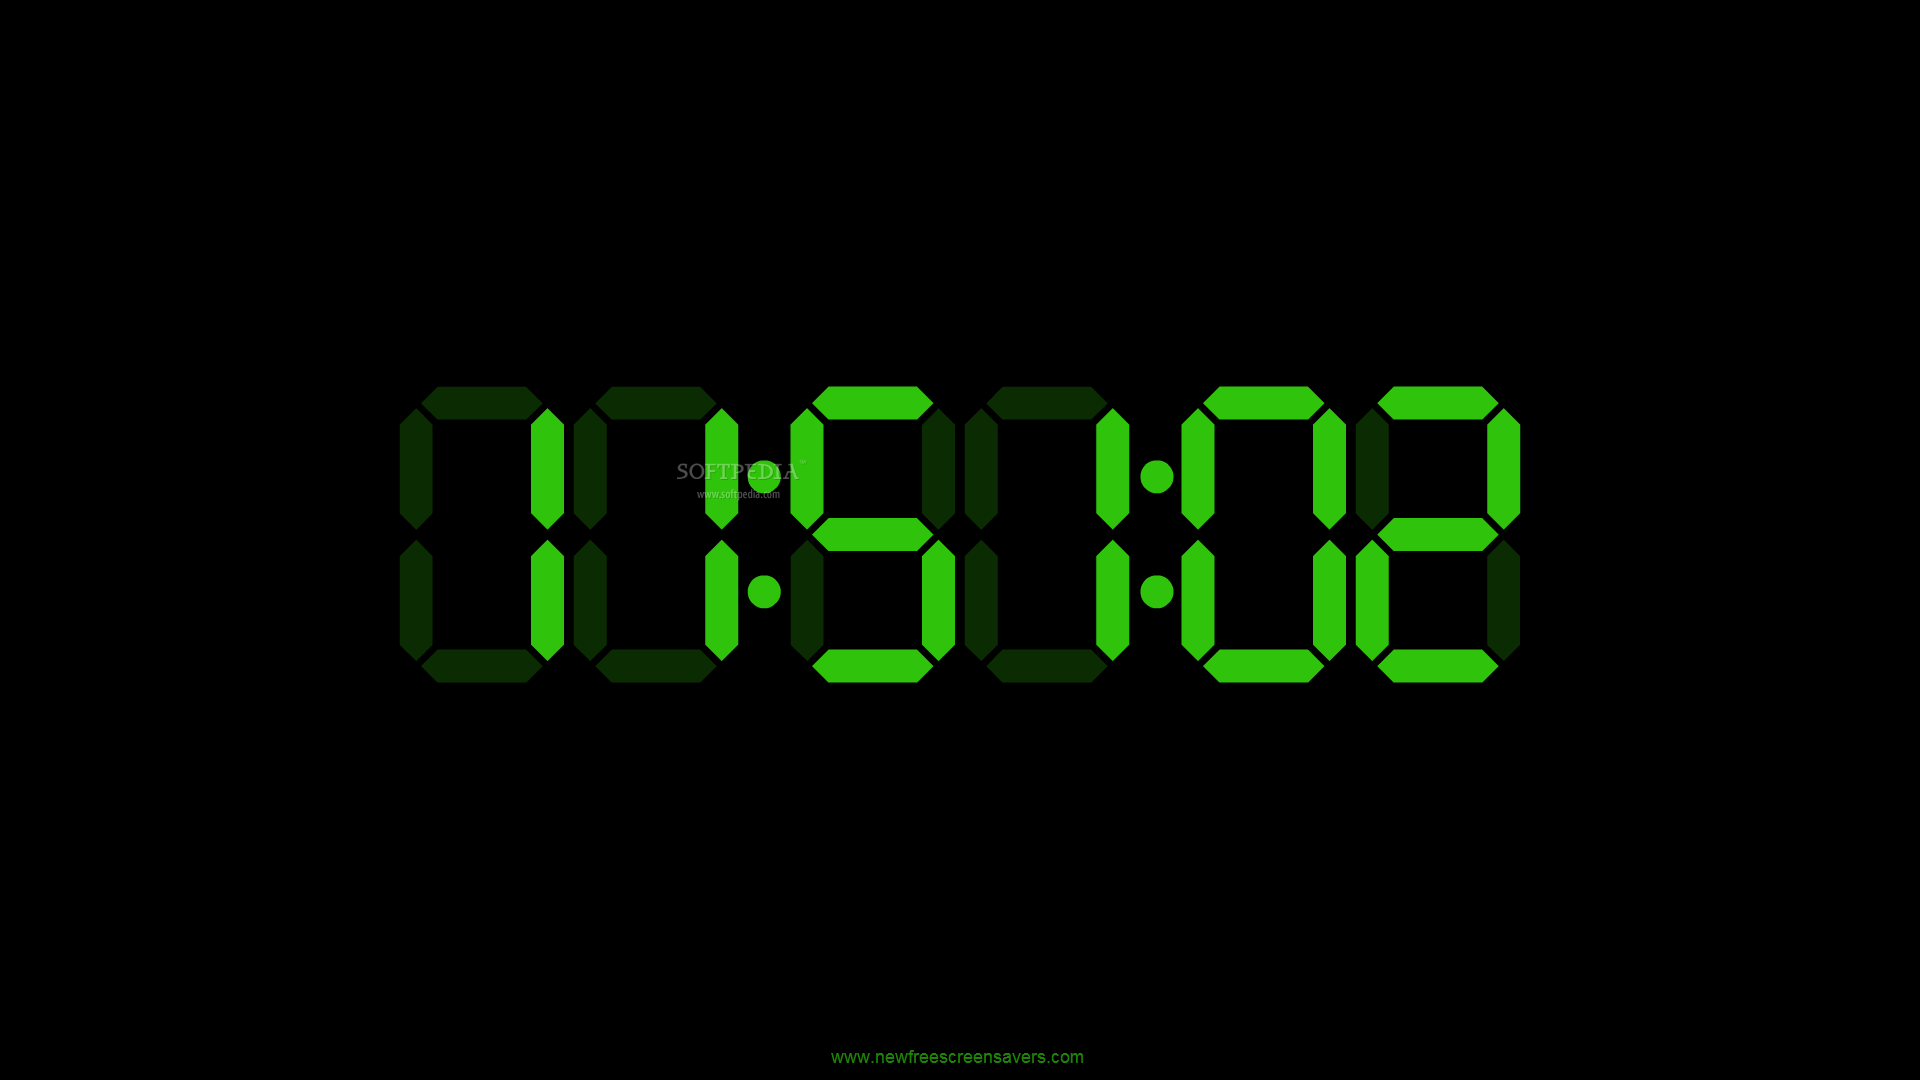 Электронные часы диджитал клок 1018. Часы Digital Clock 200730138828.4. Электронные часы на черном фоне. Скринсейвер электронные часы.